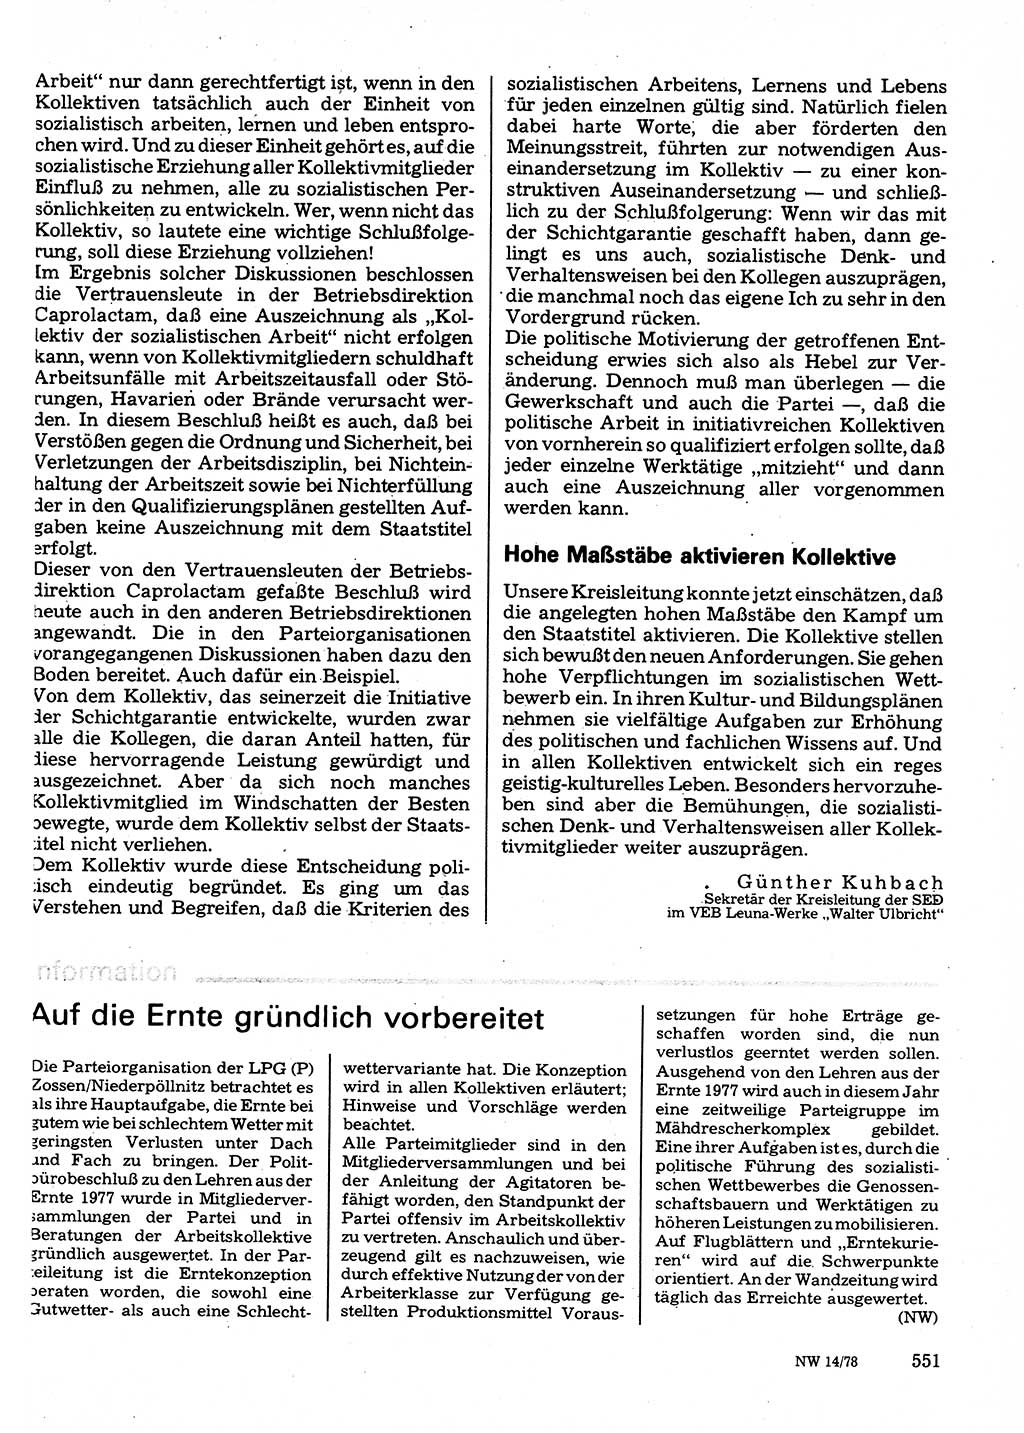 Neuer Weg (NW), Organ des Zentralkomitees (ZK) der SED (Sozialistische Einheitspartei Deutschlands) für Fragen des Parteilebens, 33. Jahrgang [Deutsche Demokratische Republik (DDR)] 1978, Seite 551 (NW ZK SED DDR 1978, S. 551)